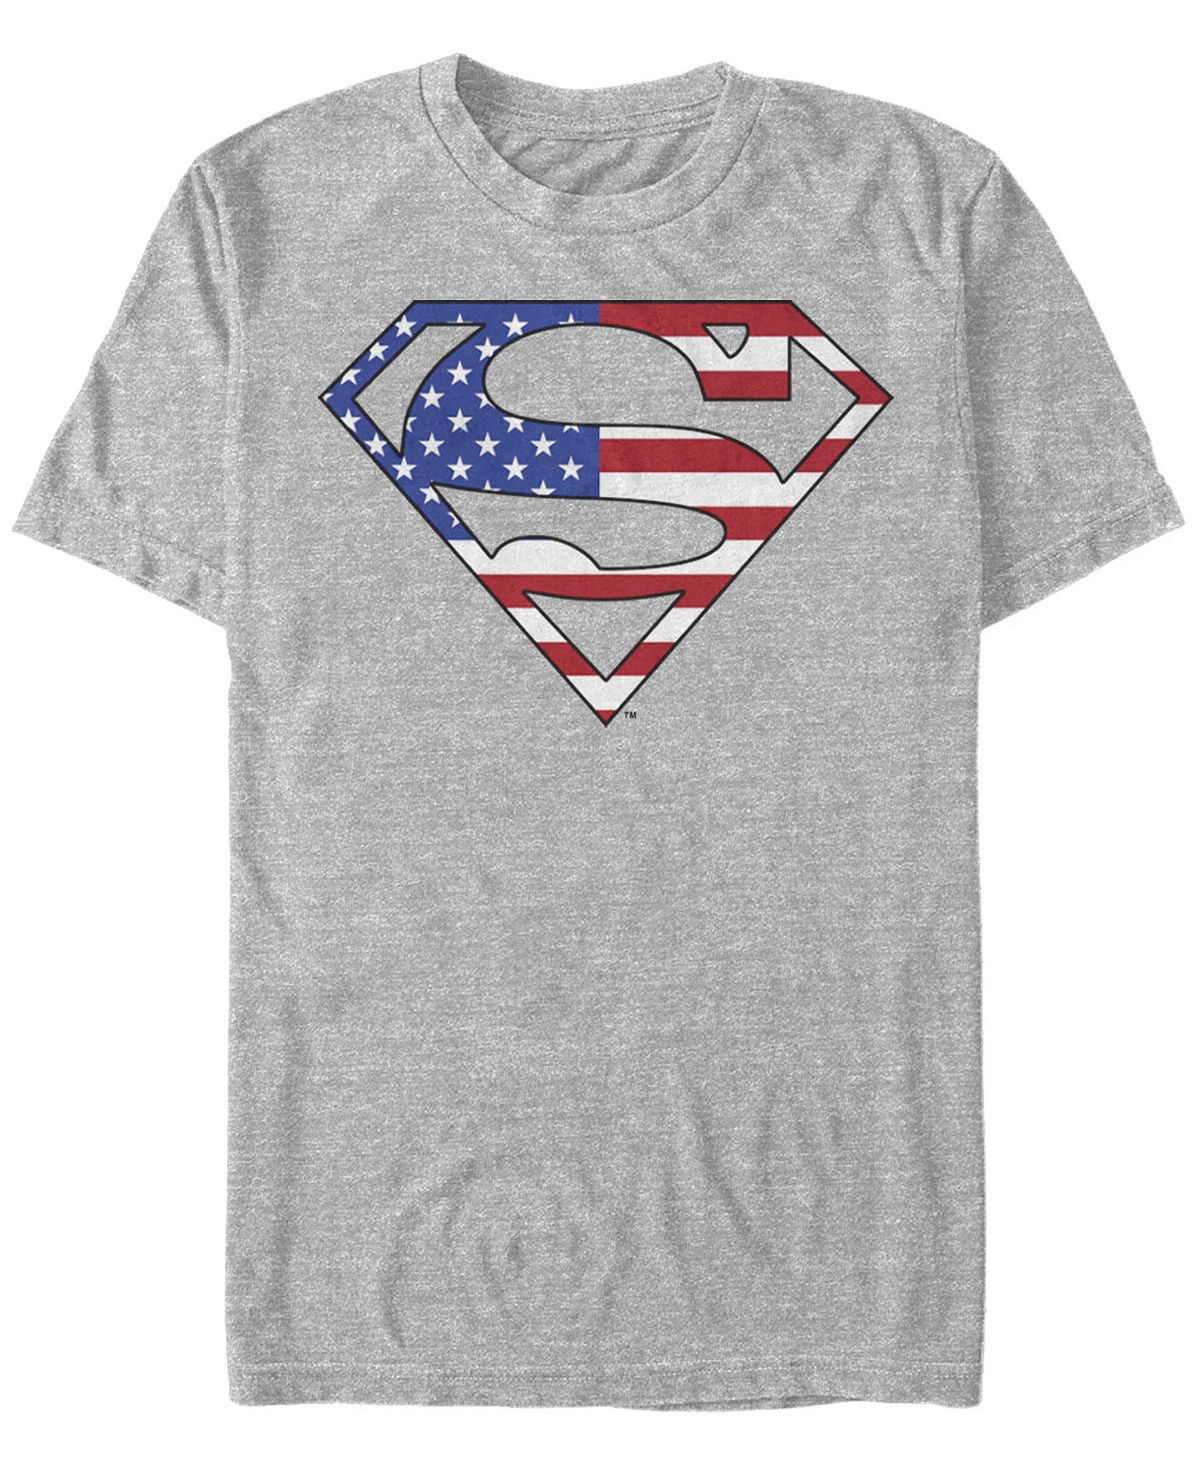 Мужская футболка с коротким рукавом superman us hero Fifth Sun, мульти носки dc comics радужный superman белые